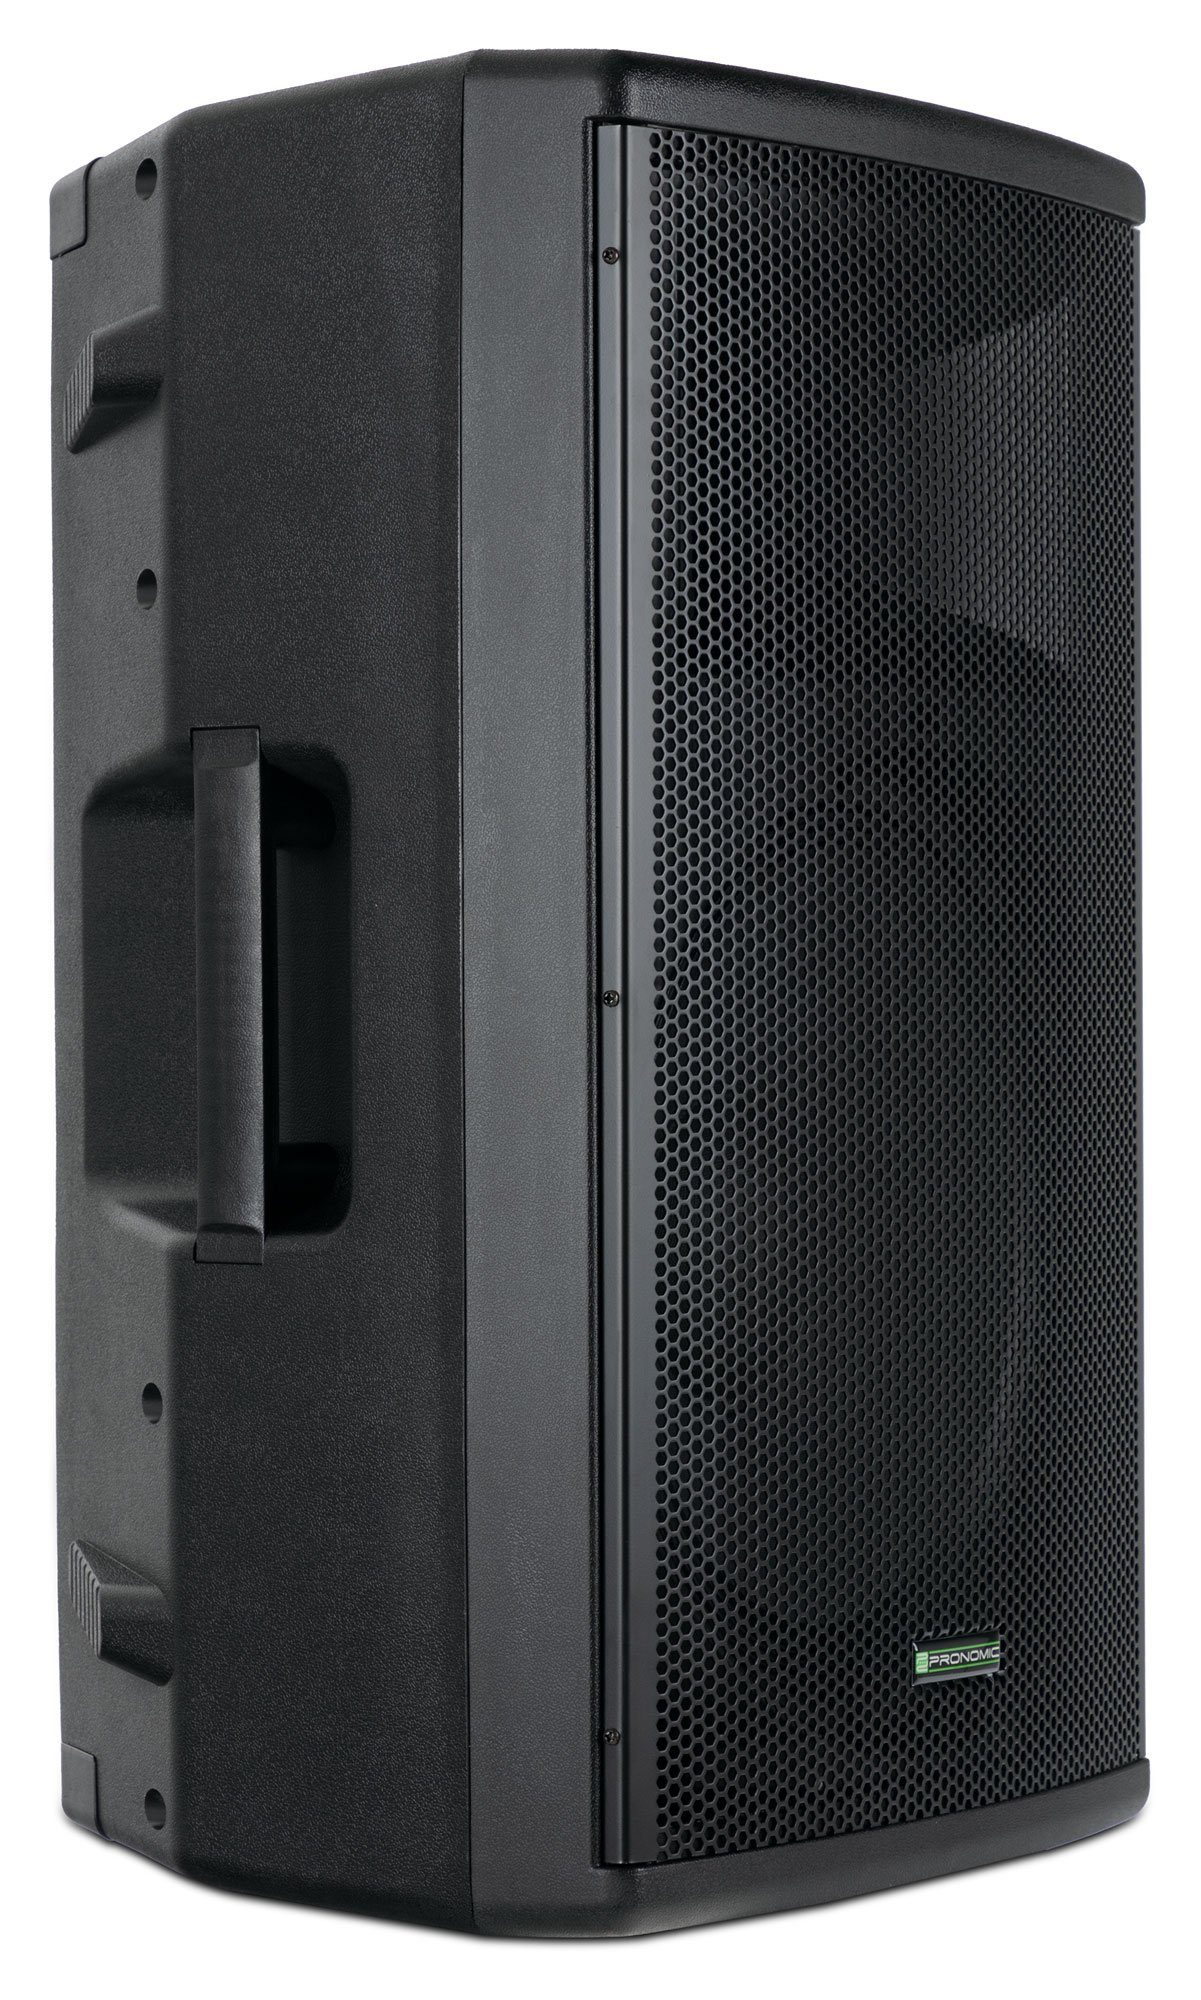 Pronomic E-215 MA - Aktive PA-Box Колонки (Bluetooth, 120 W, USB/SD/MP3-Player - 2-Wege mit 15" Woofer und 1" Kompressions-Treiber)